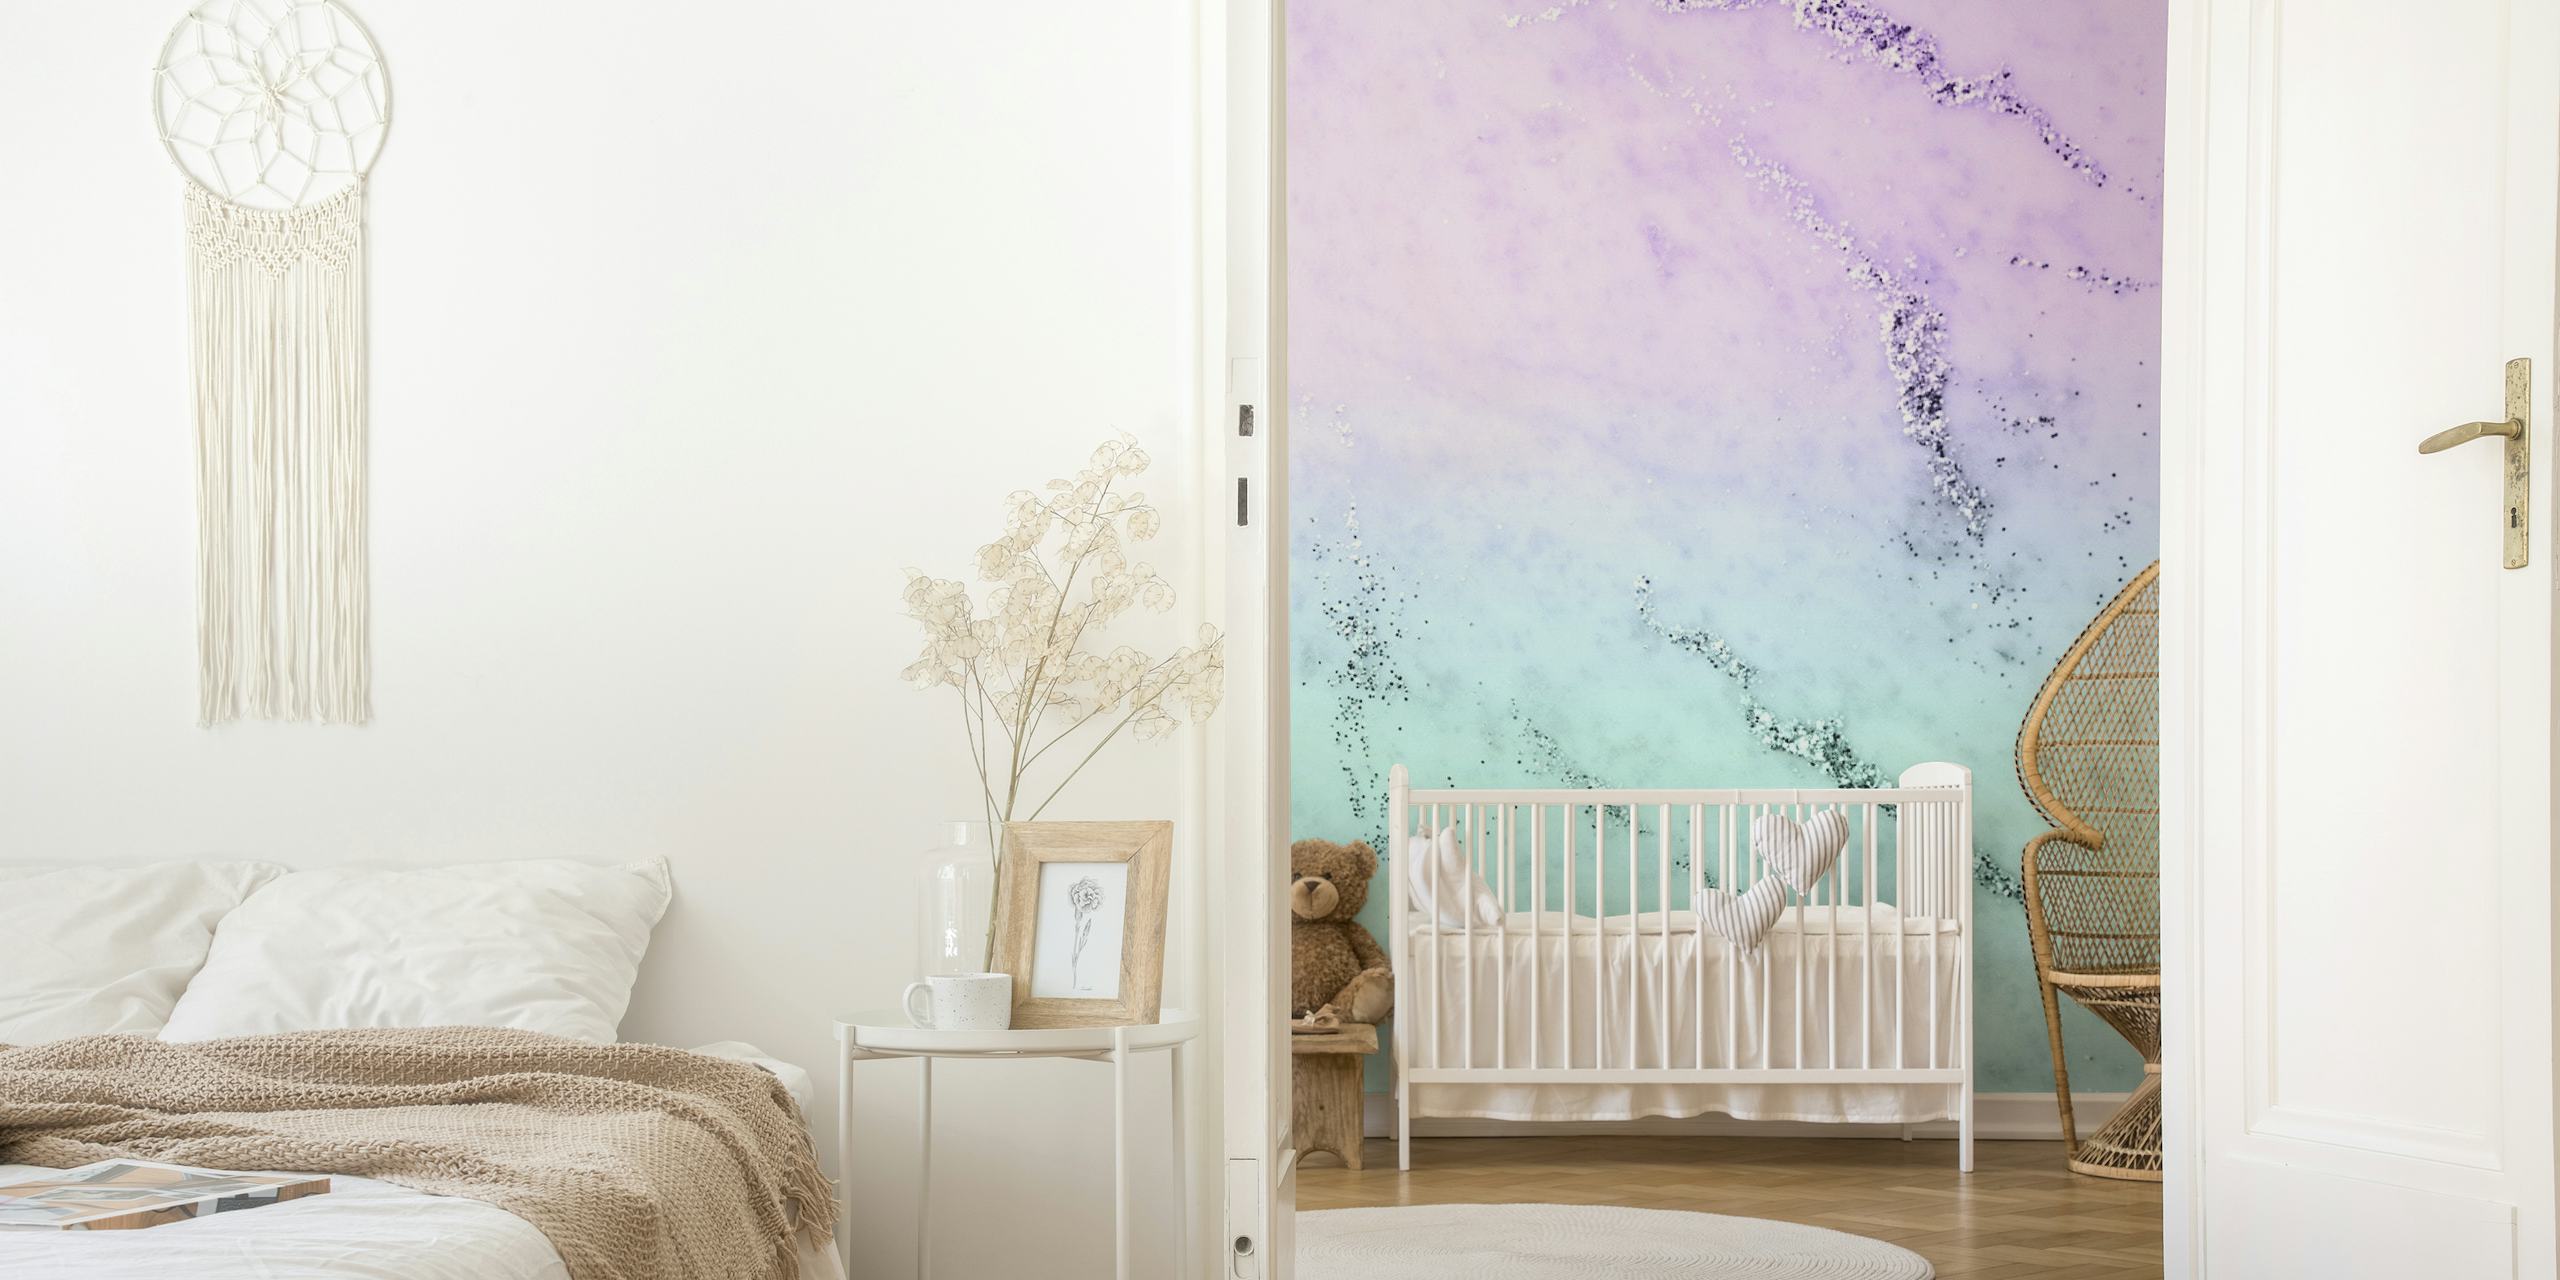 Zidna slika od svjetlucavog mramora inspirirana apstraktnom sirenom s pastelno ljubičastom i mirnom plavozelenom bojom.